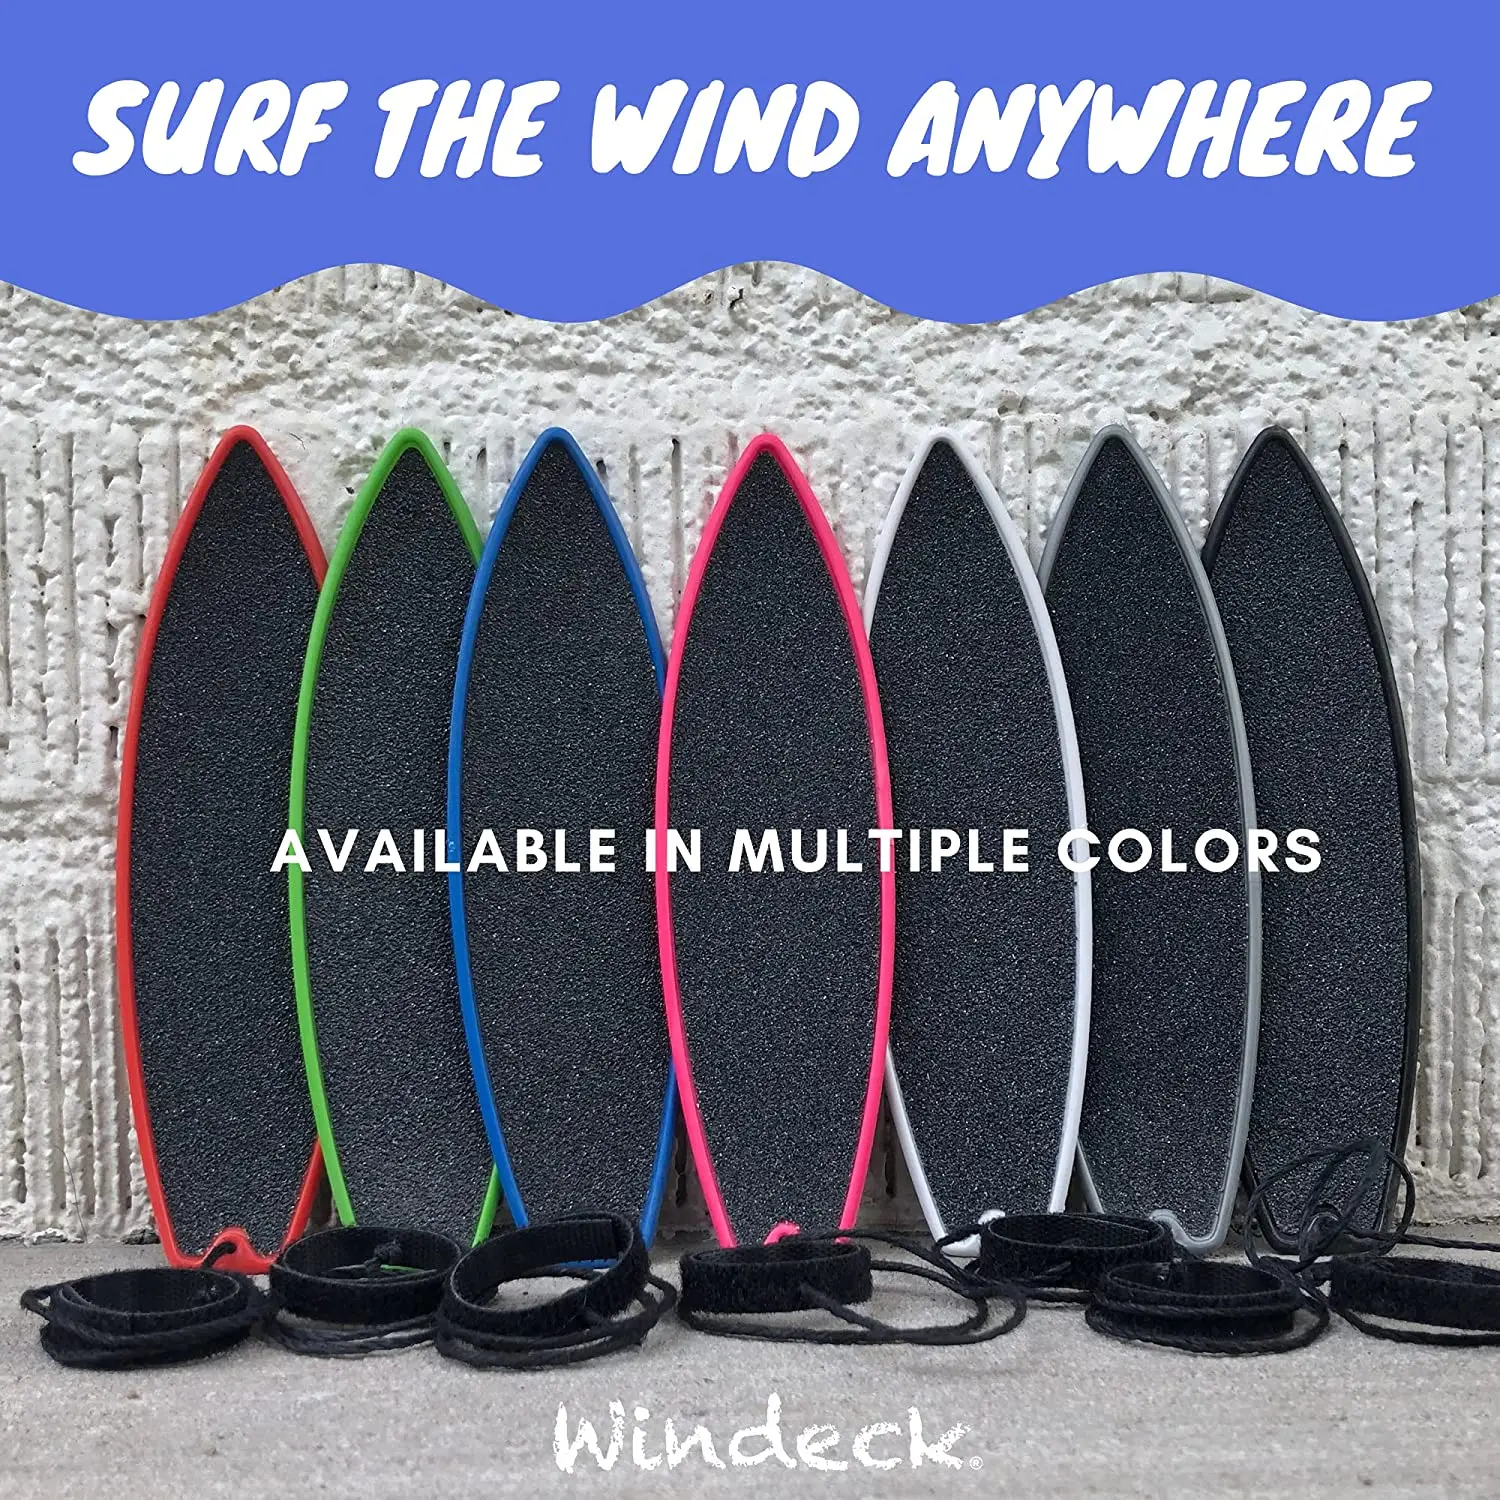 

Фингерборд для серфинга, игрушка для ветра, мини-доска для серфинга для детей и серферов, подарок на день рождения, мини-доска для серфинга для искусственных сувениров